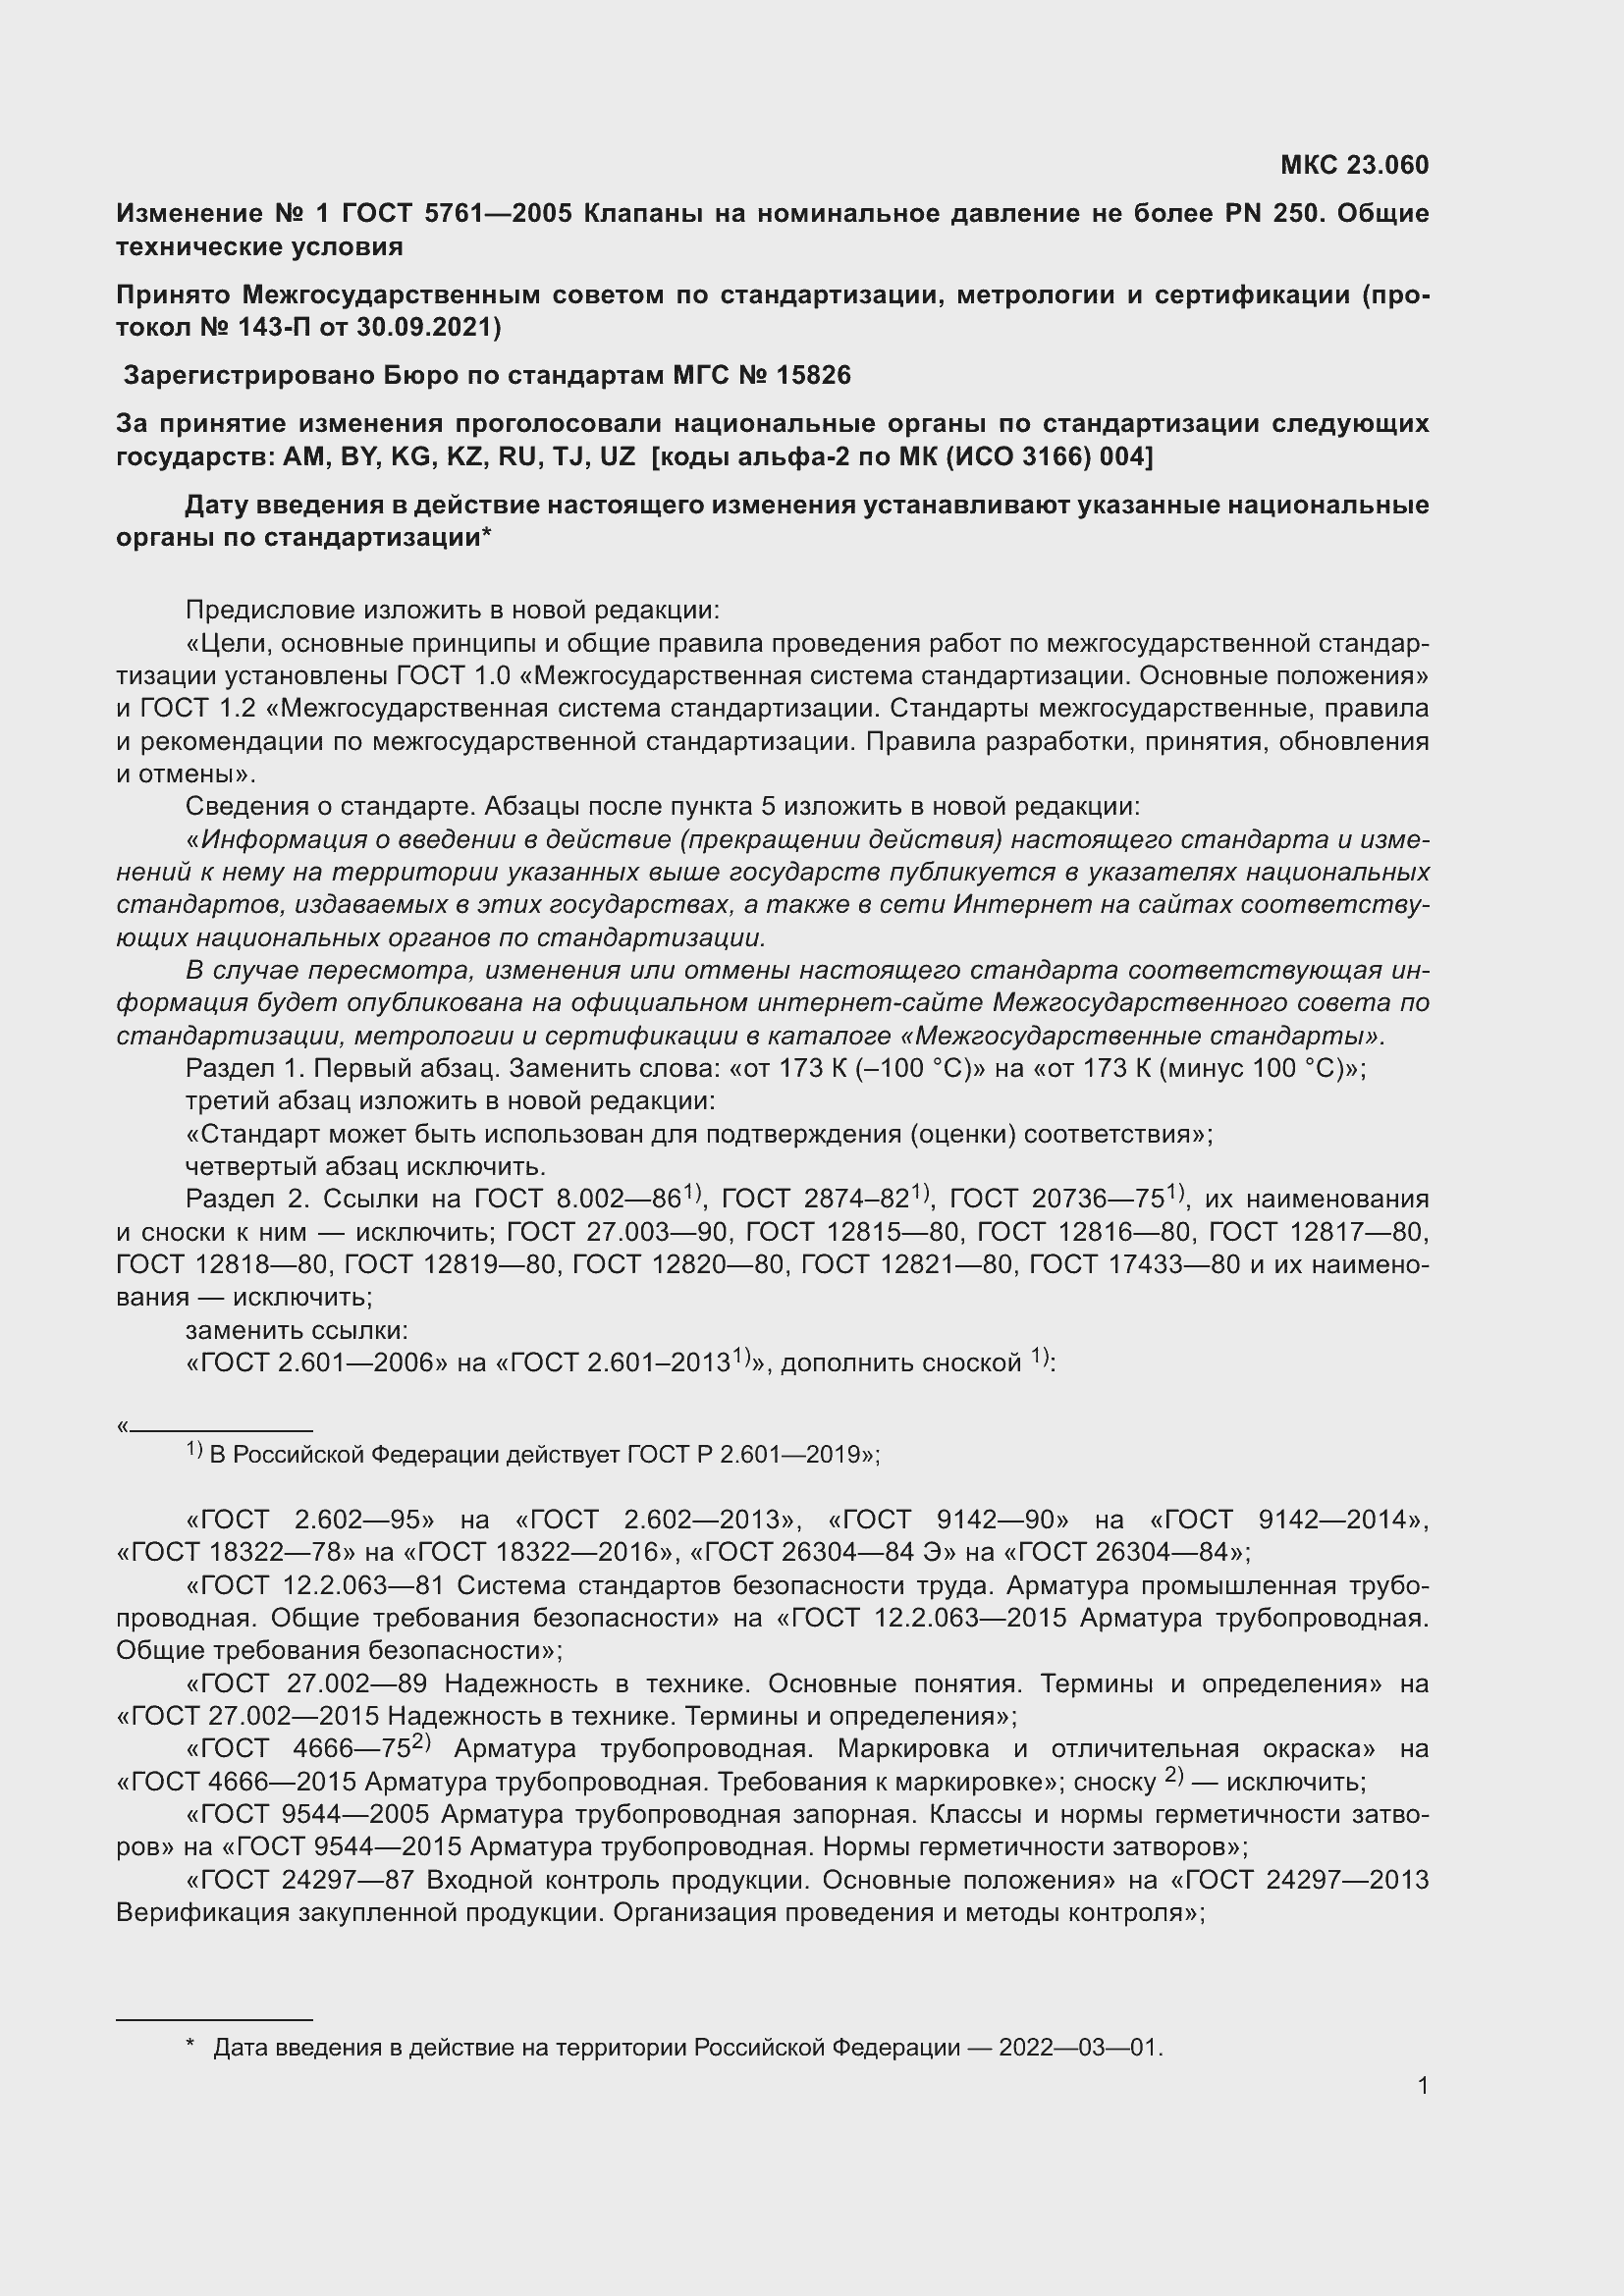 Изменение №1 к ГОСТ 5761-2005